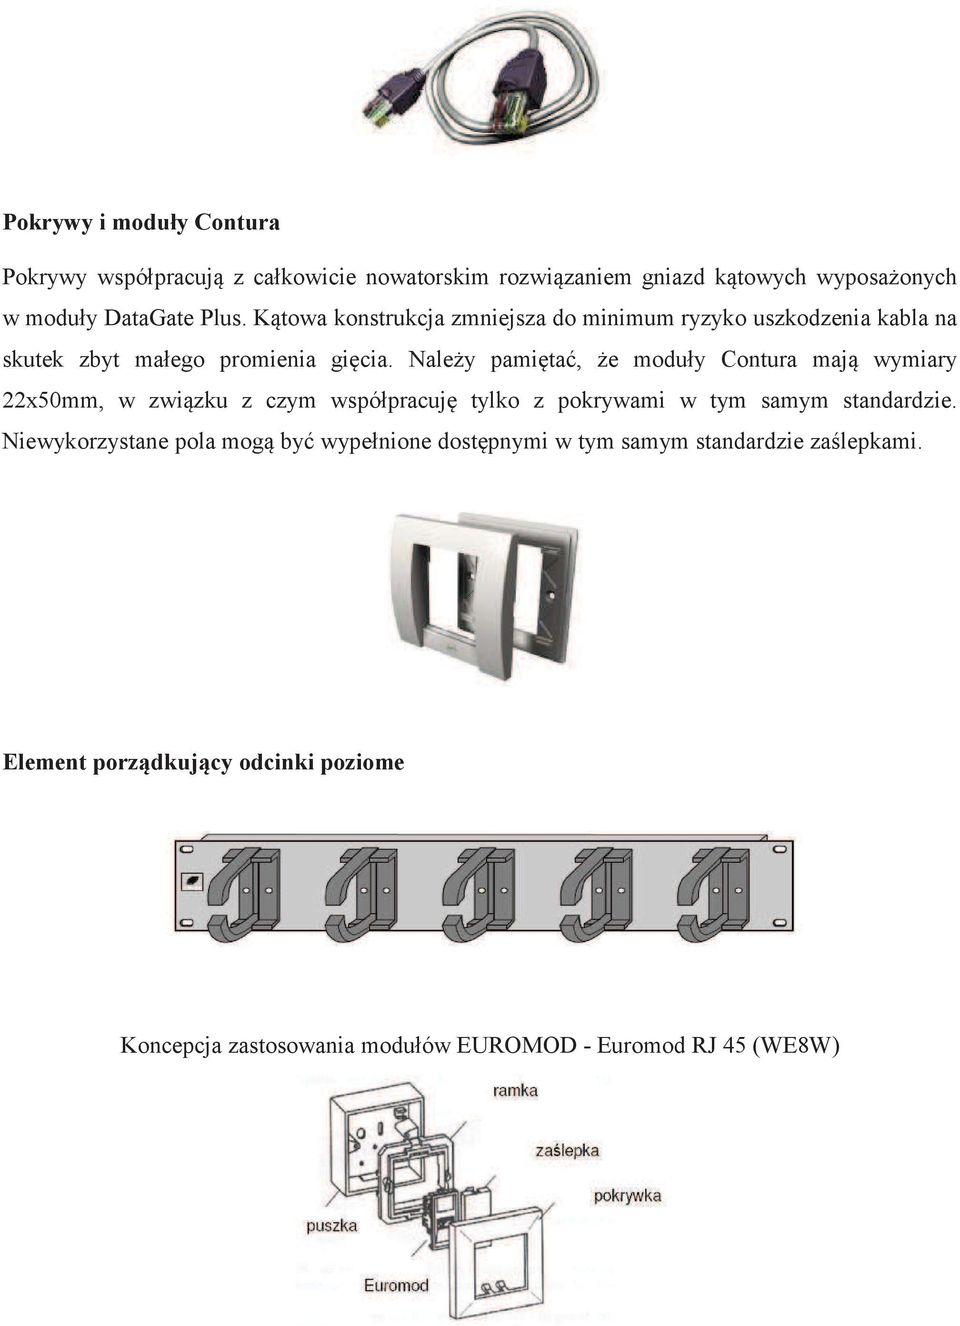 Naley pamita, e moduły Contura maj wymiary 22x50mm, w zwizku z czym współpracuj tylko z pokrywami w tym samym standardzie.